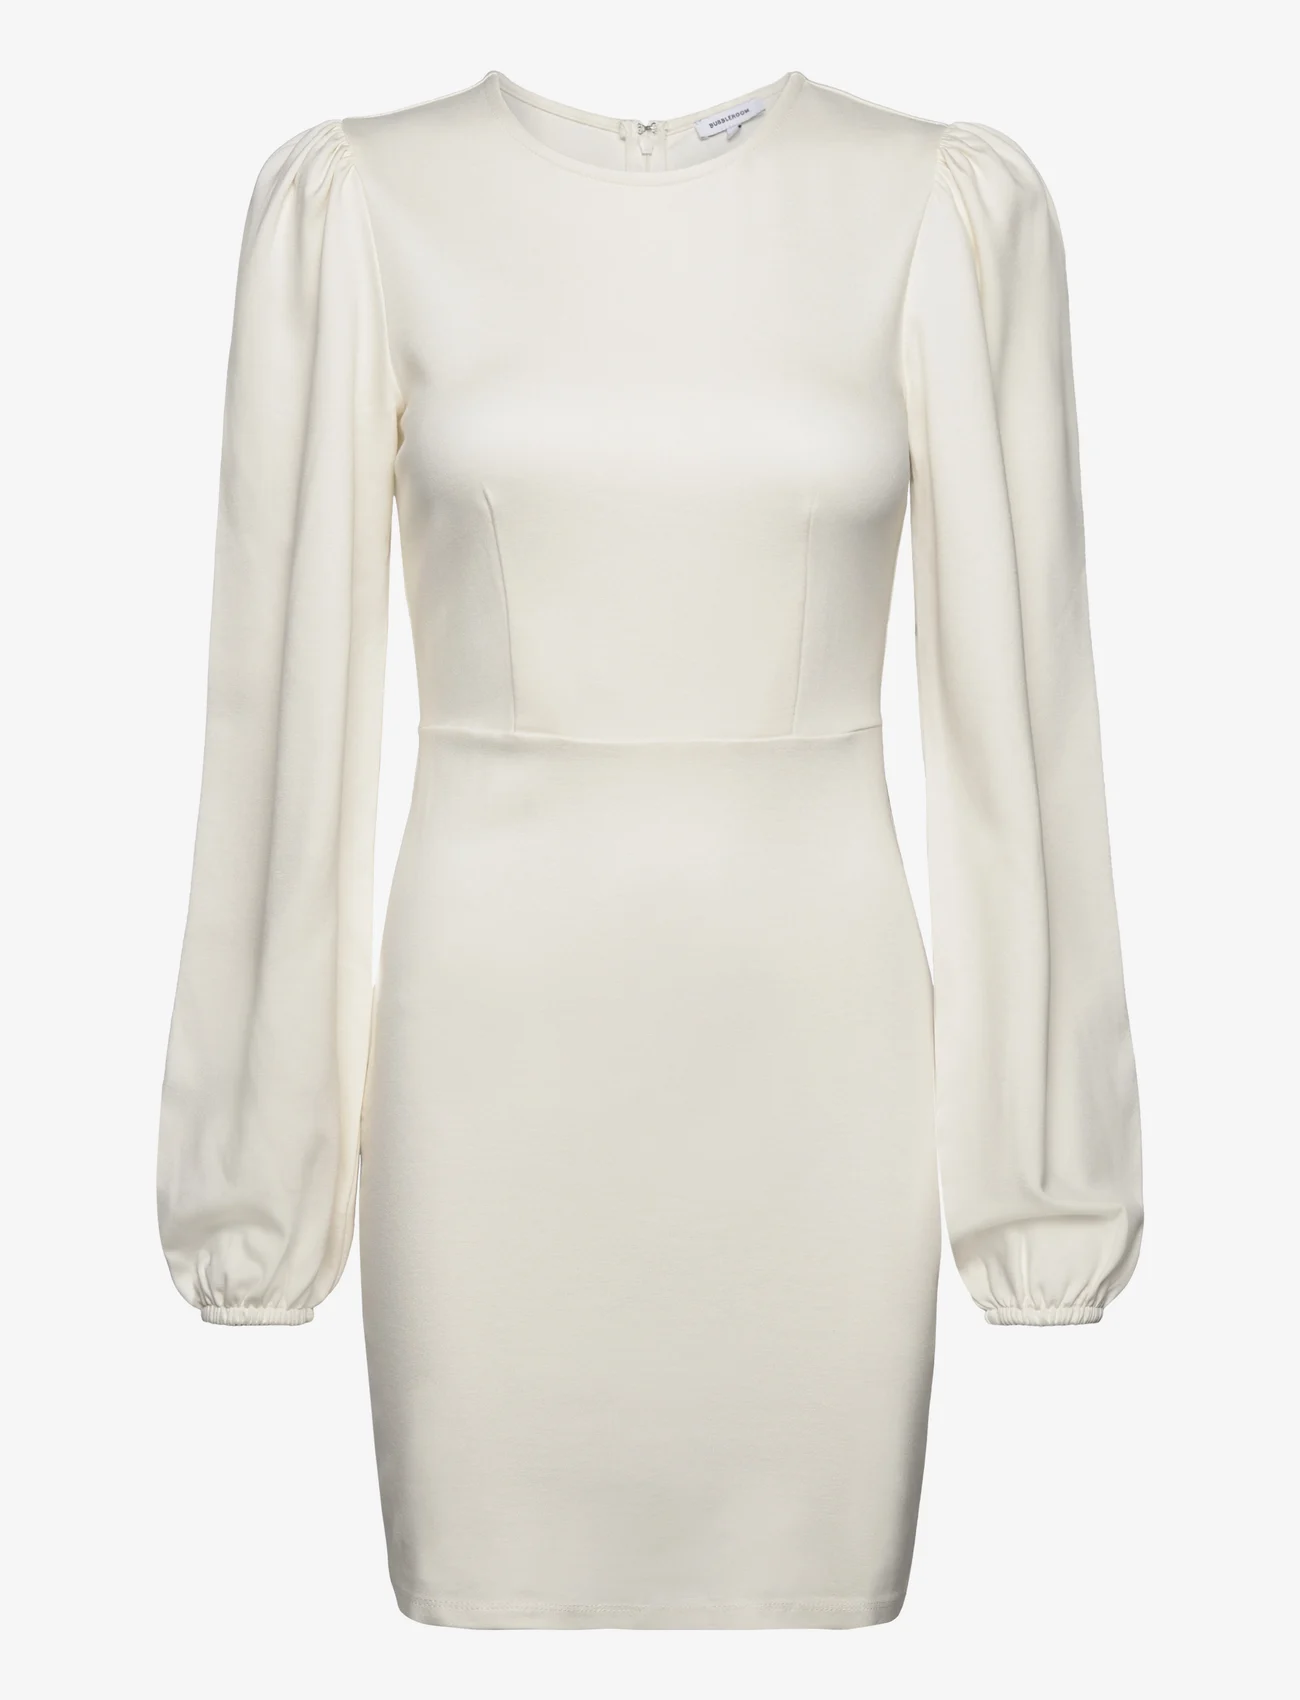 Bubbleroom - Idalina Puff Sleeve Dress - die niedrigsten preise - white - 0